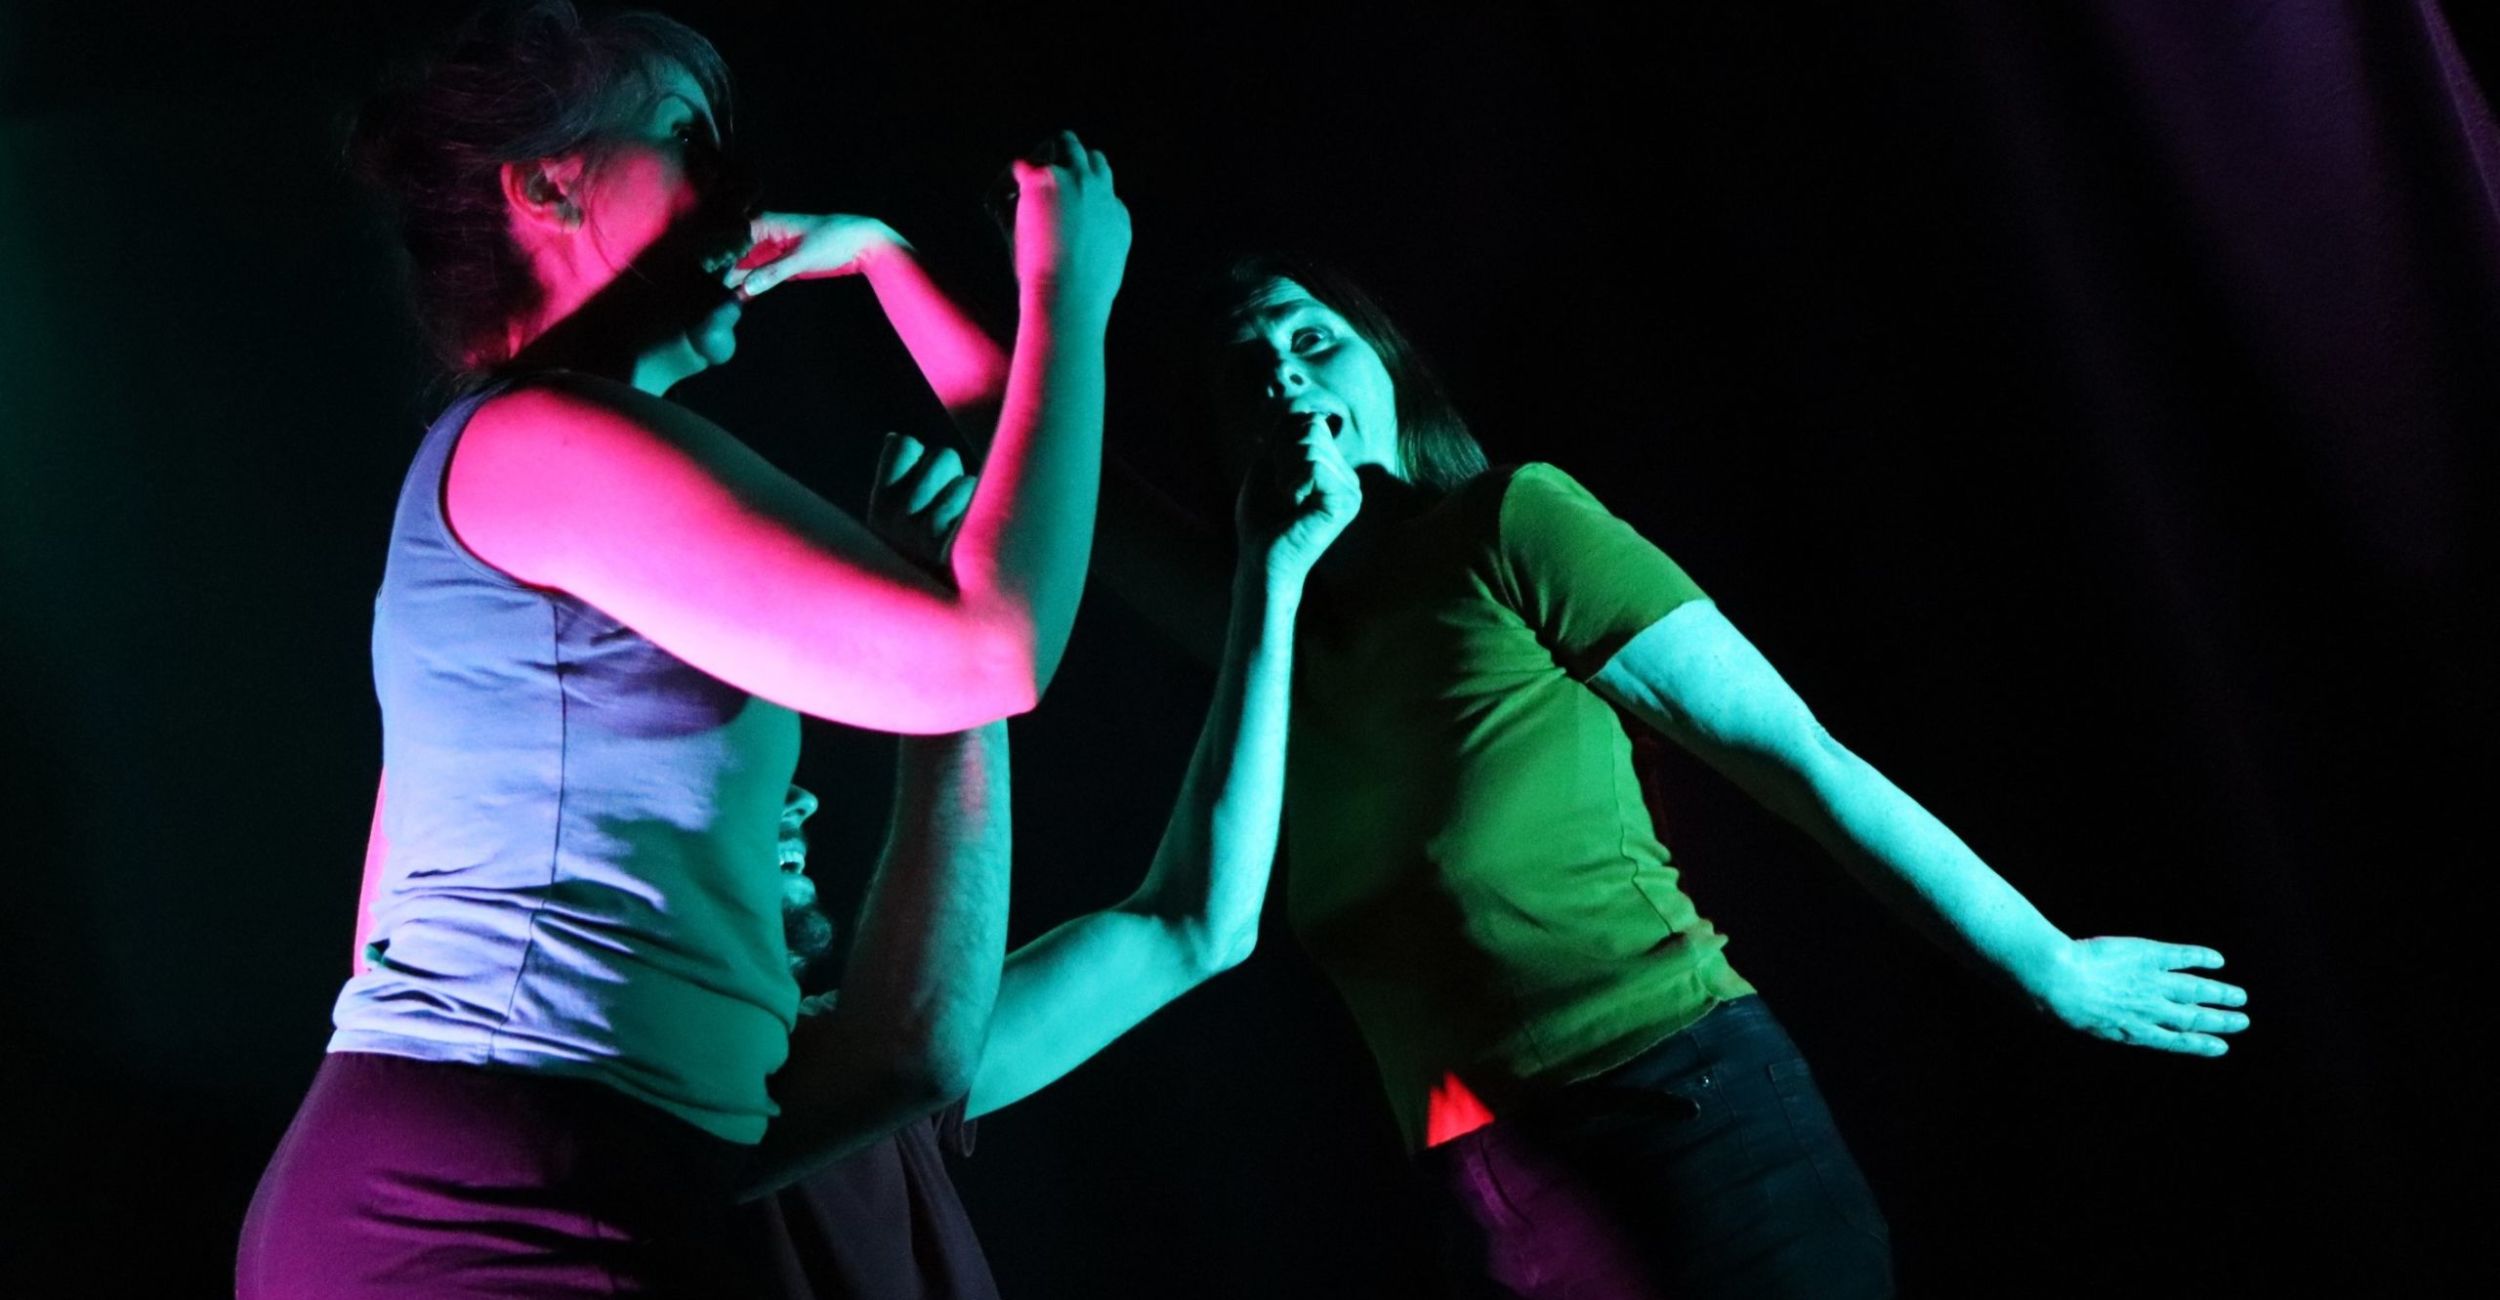 Danseuses du cabaret d'improdanse spectacle d'improvisation de la ligue angevine de danse improvisée à La Fabrique à Impros Nantes